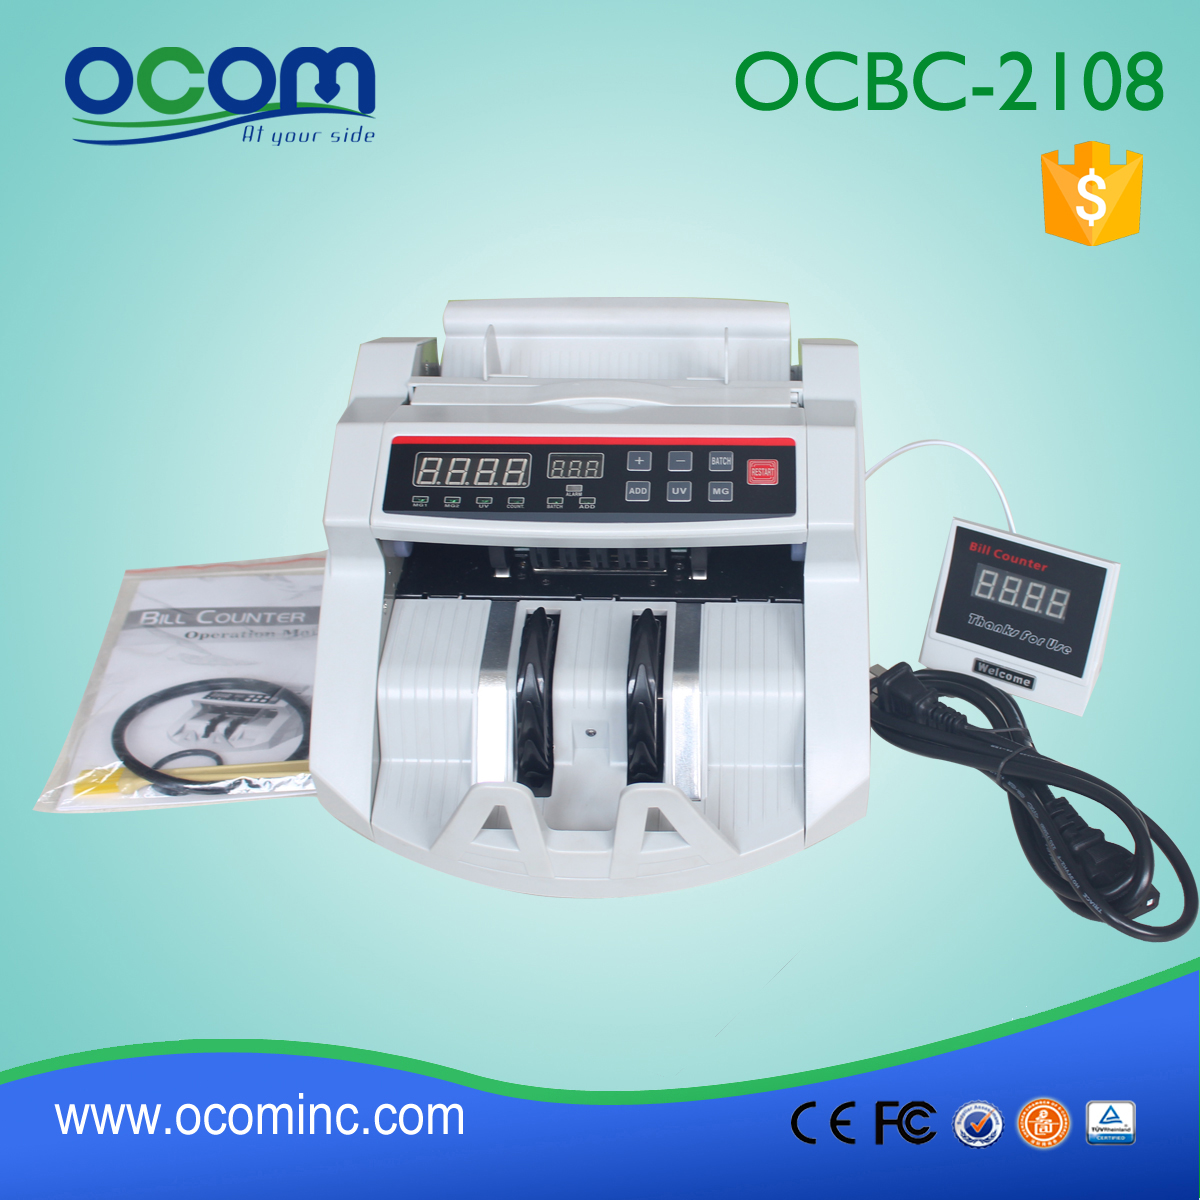 High-Speed Währung Zähler Banknote Detektor mit UV + MG (OCBC-2108)